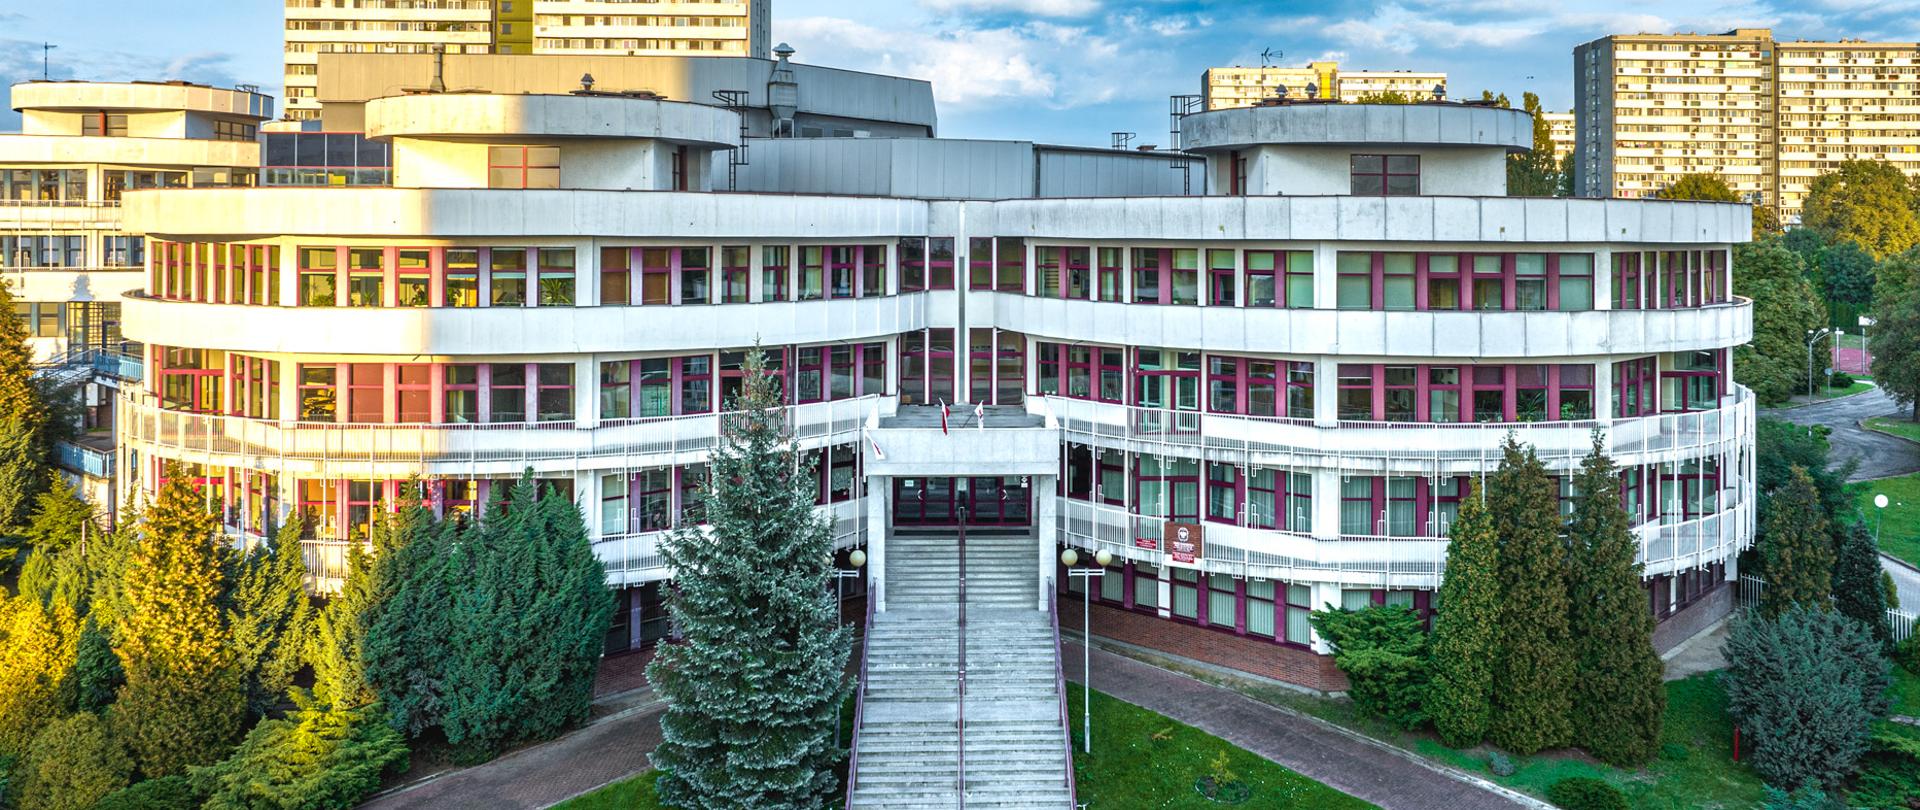 zdjęciu budynku ZPSM im. W. Kilara w Katowicach fot. Dawid Czyż